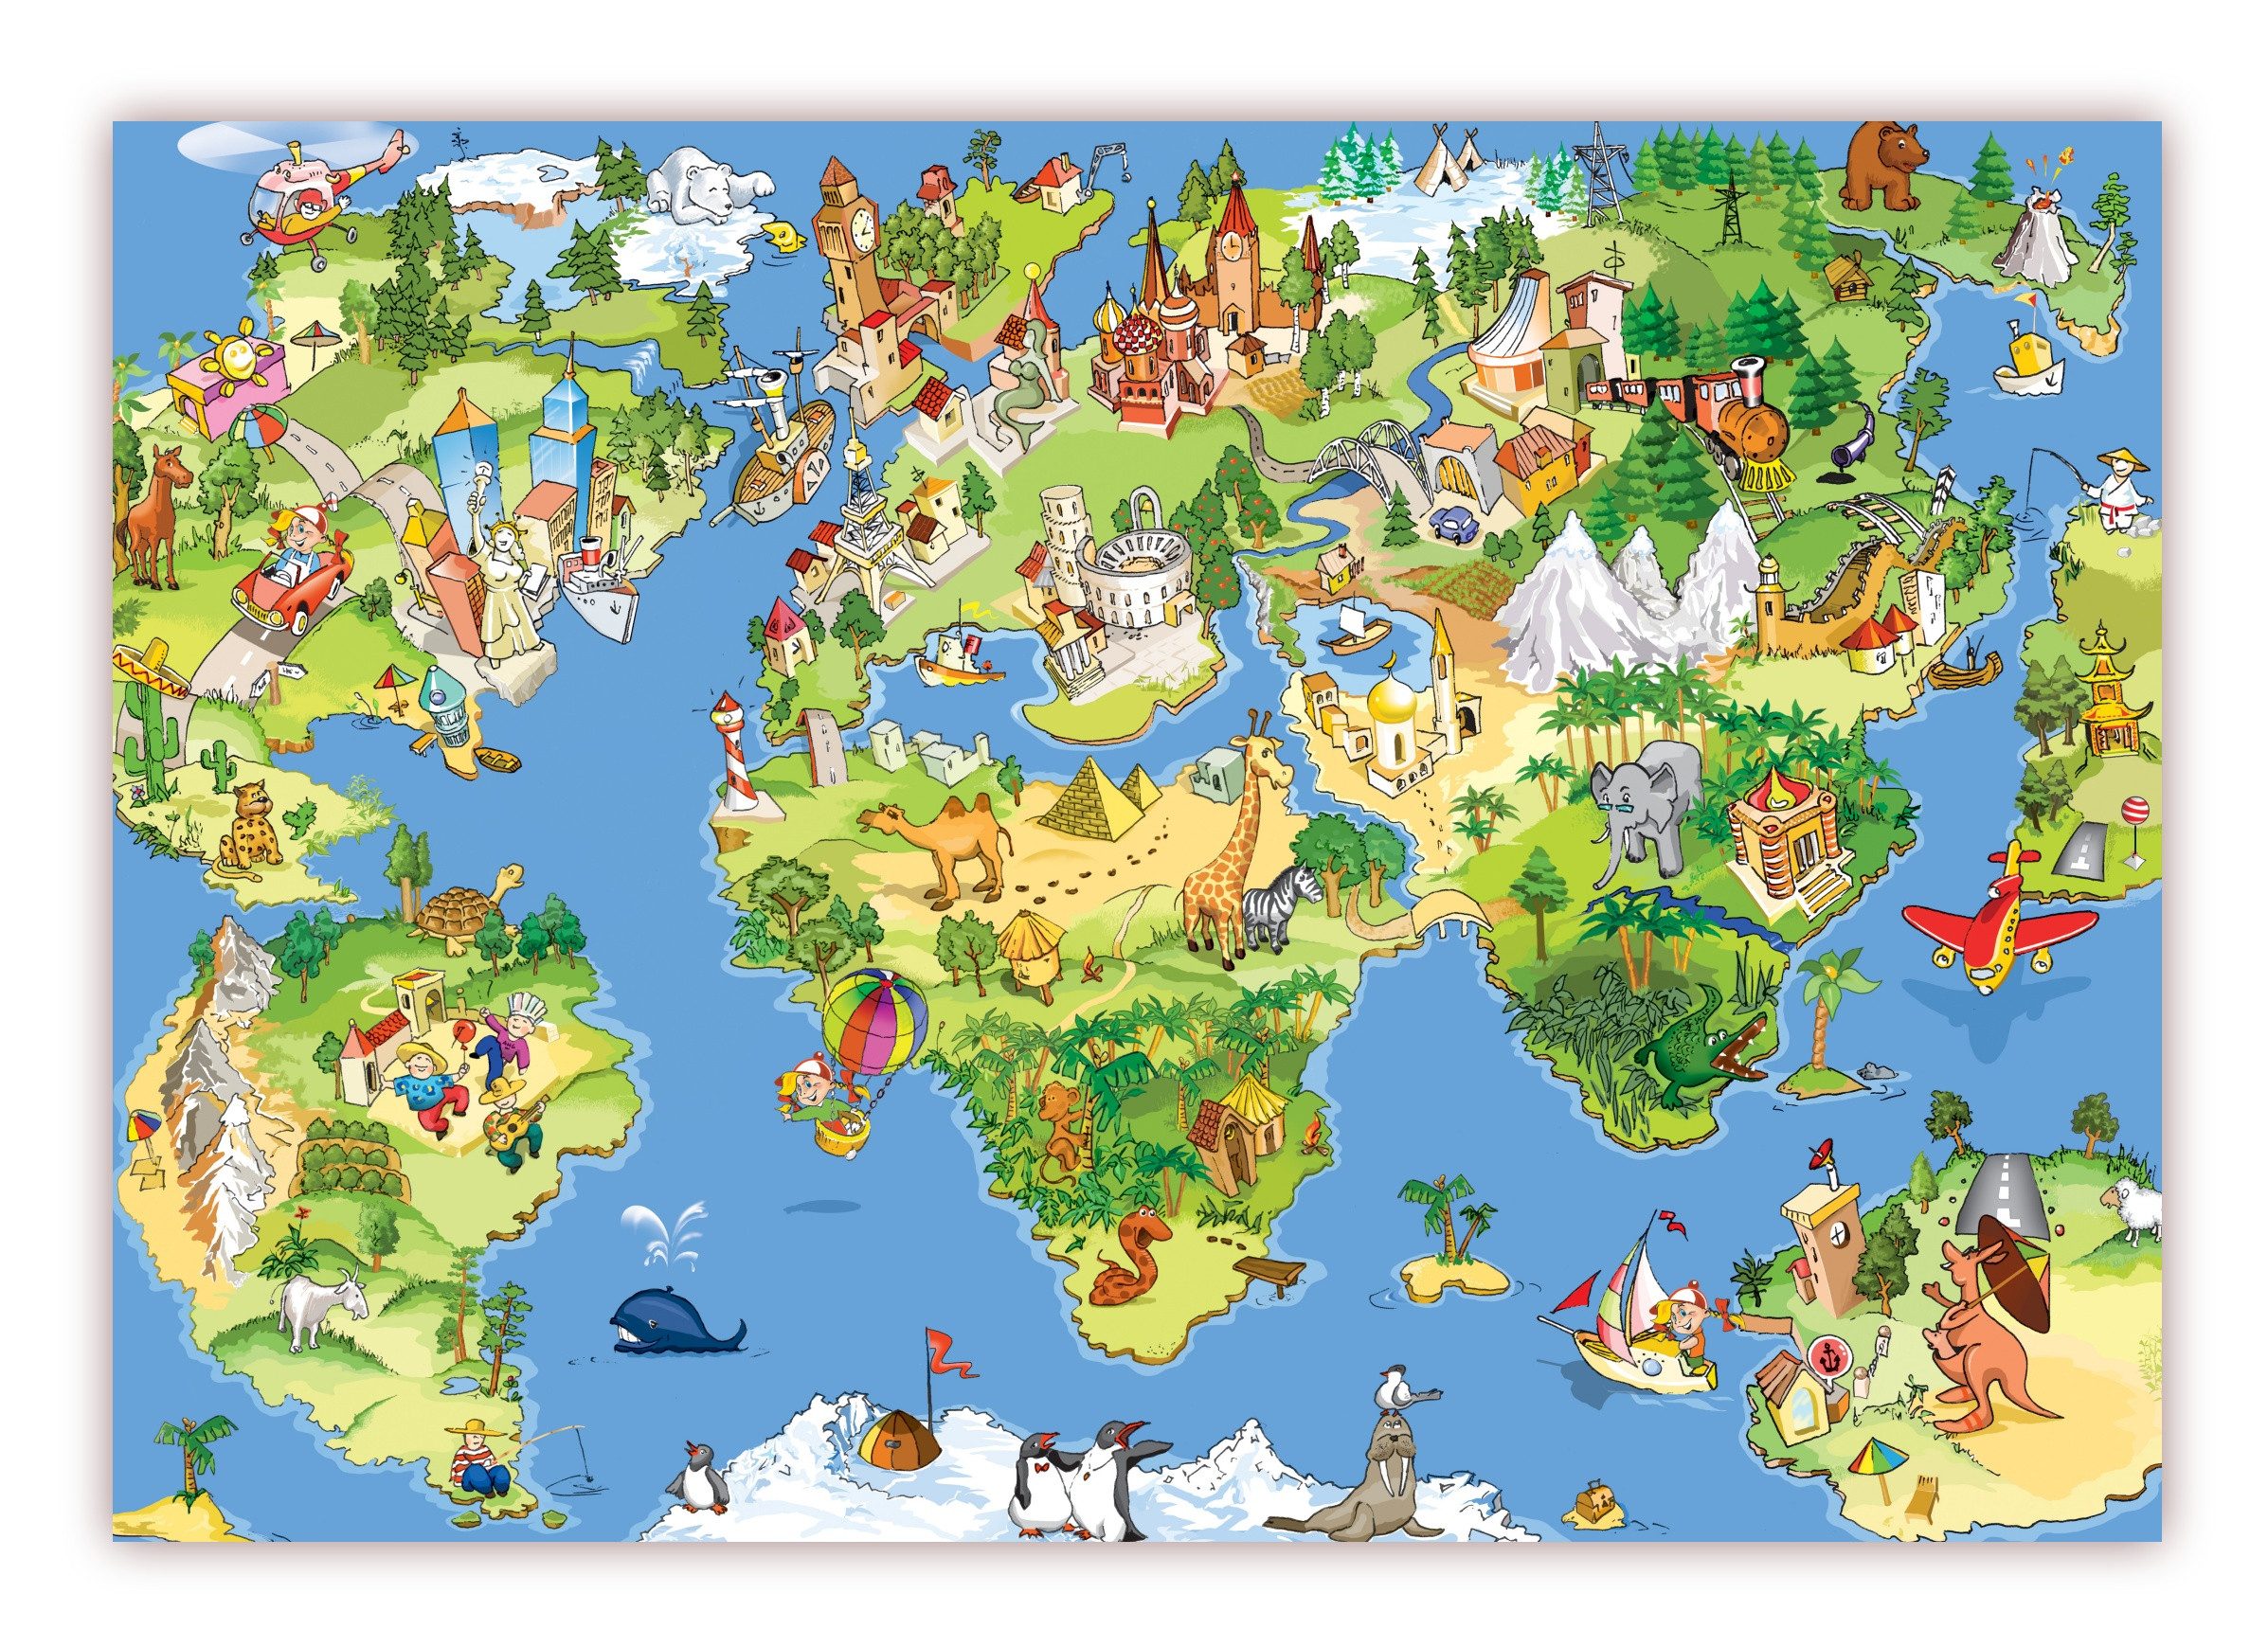 LYSCO Poster XXL Plakat Weltkarte, Wimmelbildposter Kinderposter schöne Weltkarte Landkarte mit Sehenswürdigkeiten und vielem zu entdecken (S-822) (100 x 70 cm DIN B1), Wandbild, Wandposter